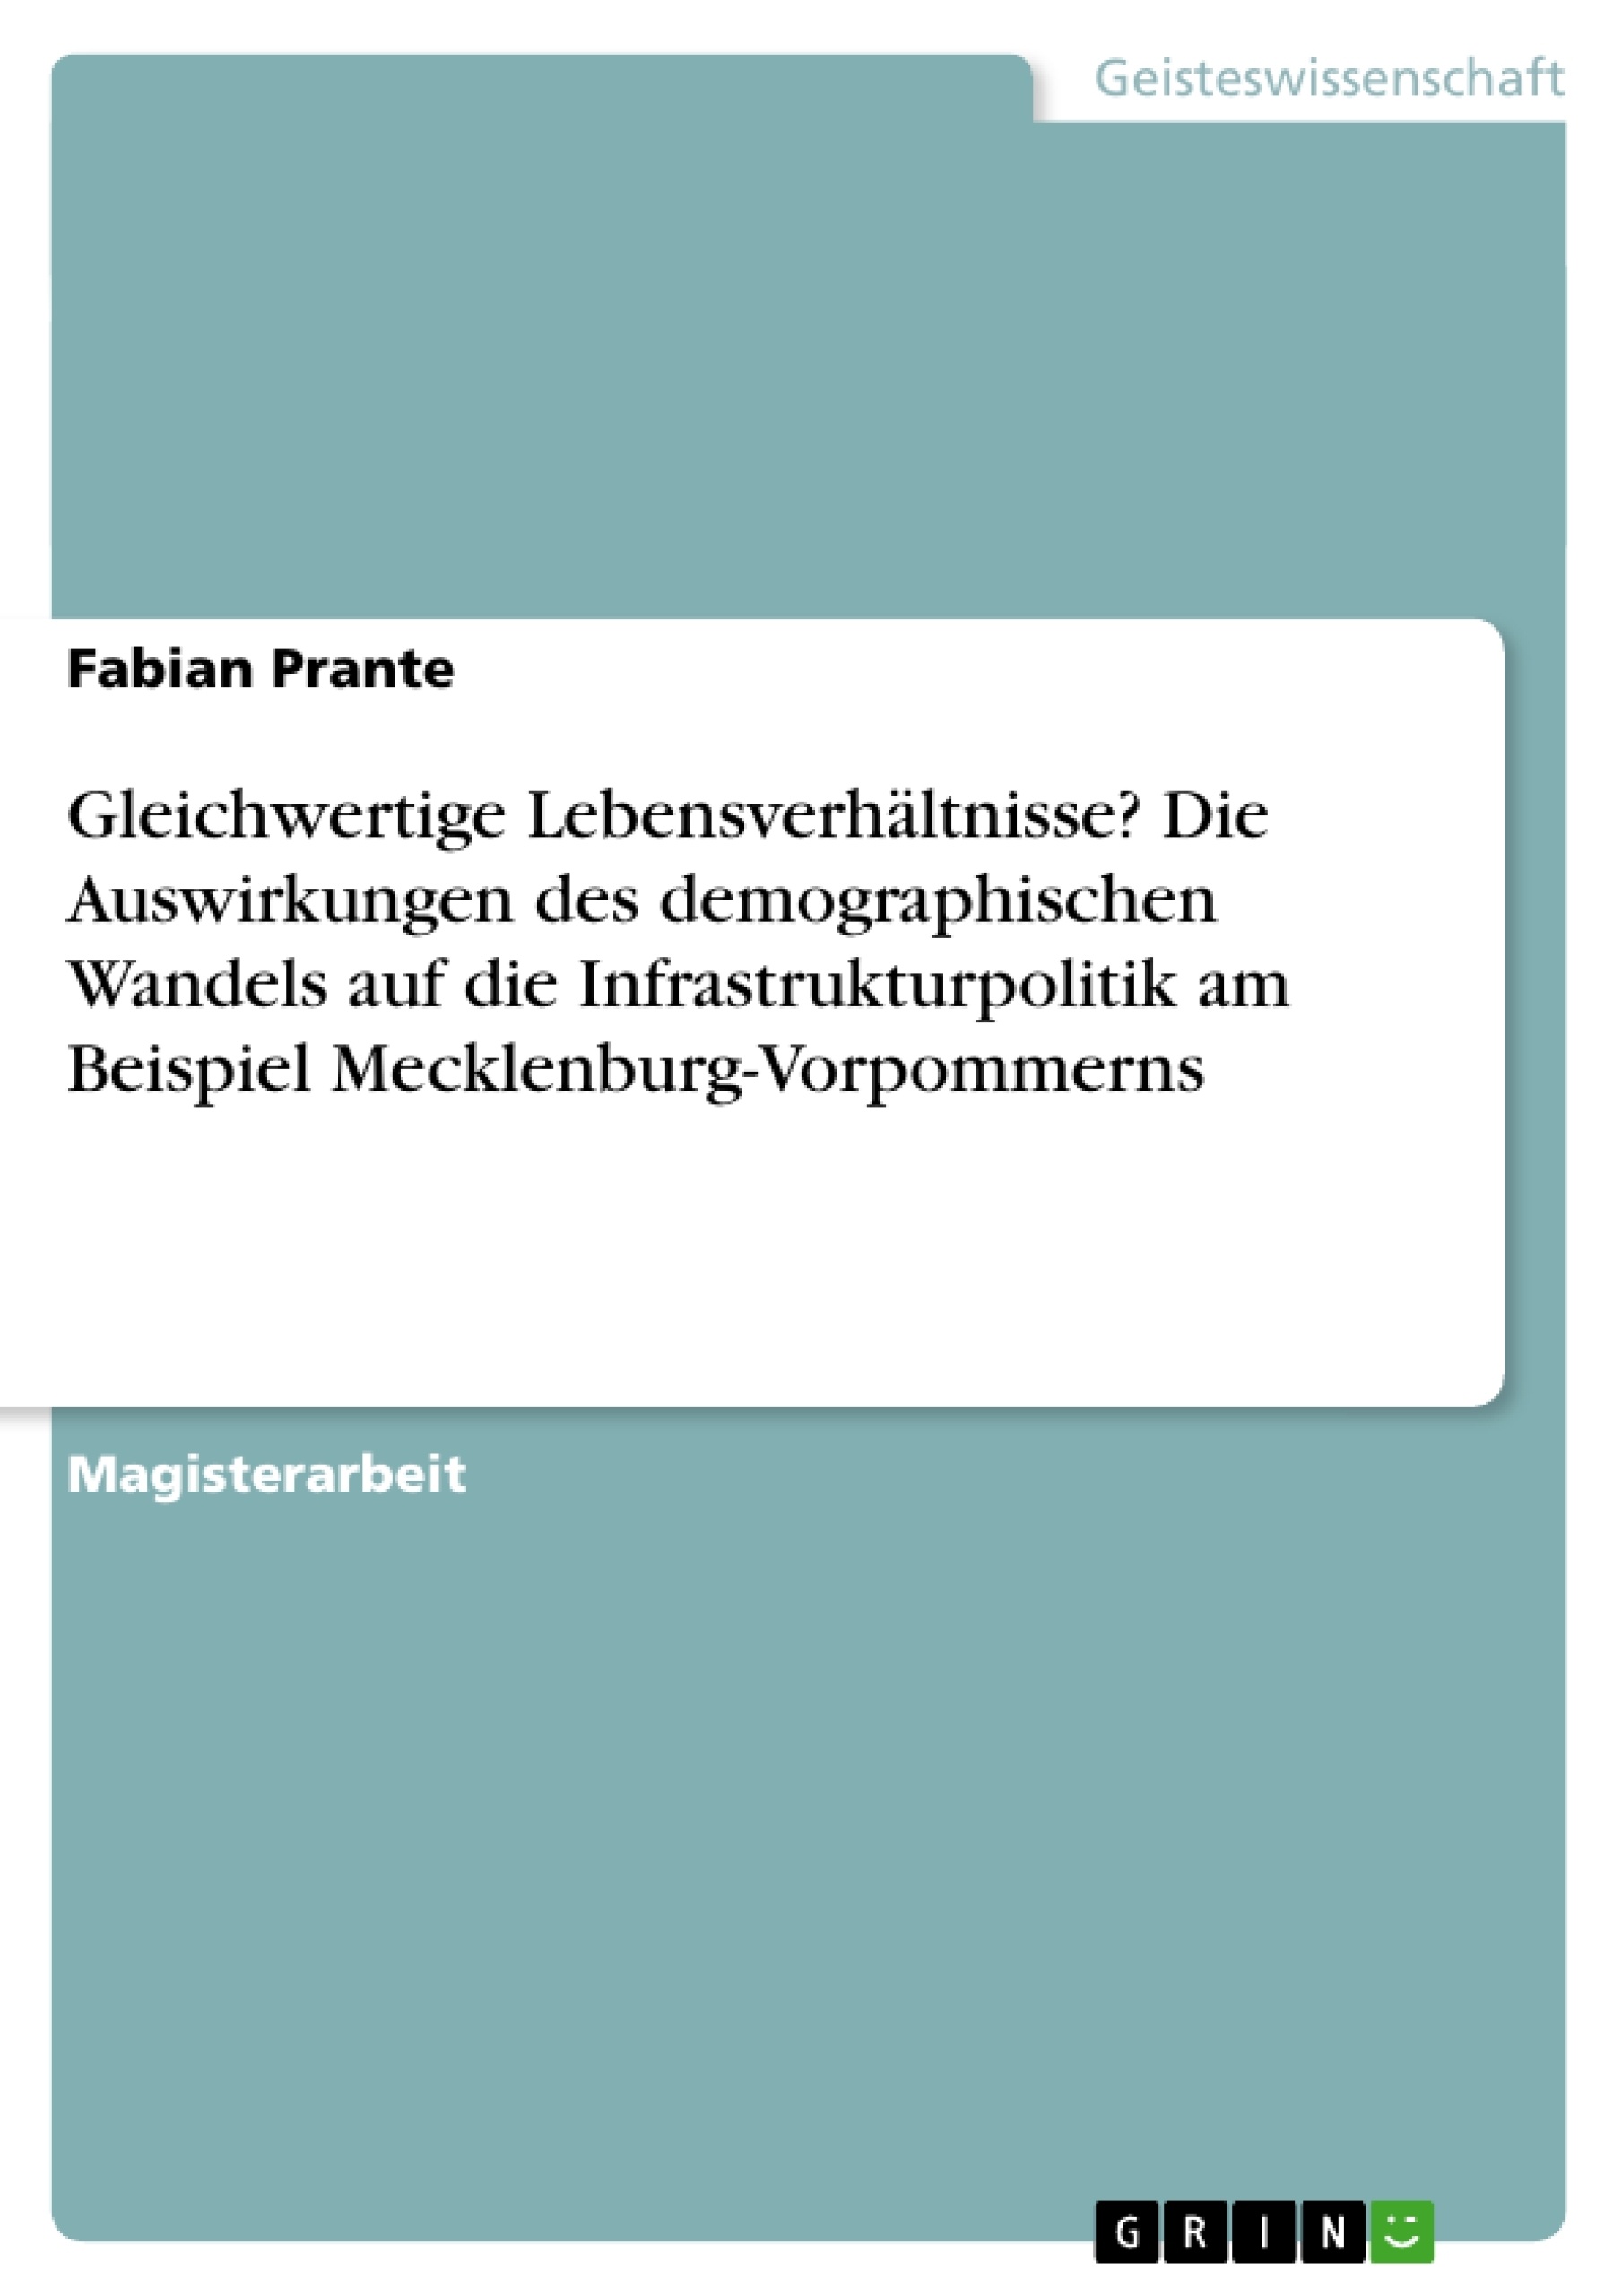 Titel: Gleichwertige Lebensverhältnisse? Die Auswirkungen des demographischen Wandels auf die Infrastrukturpolitik am Beispiel Mecklenburg-Vorpommerns